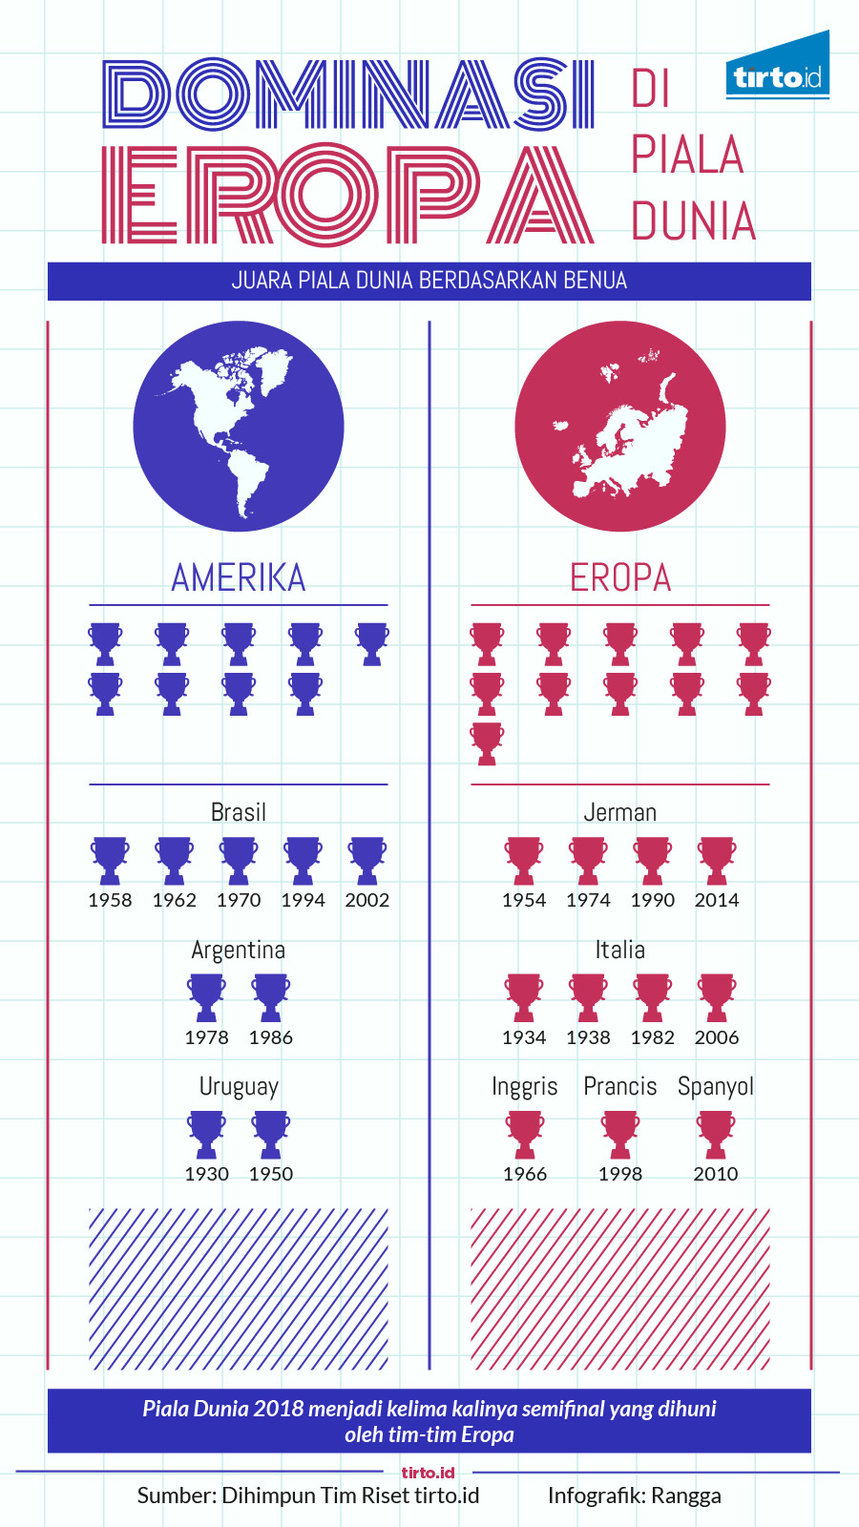 Infografik Dominasi Eropa di Piala Dunia